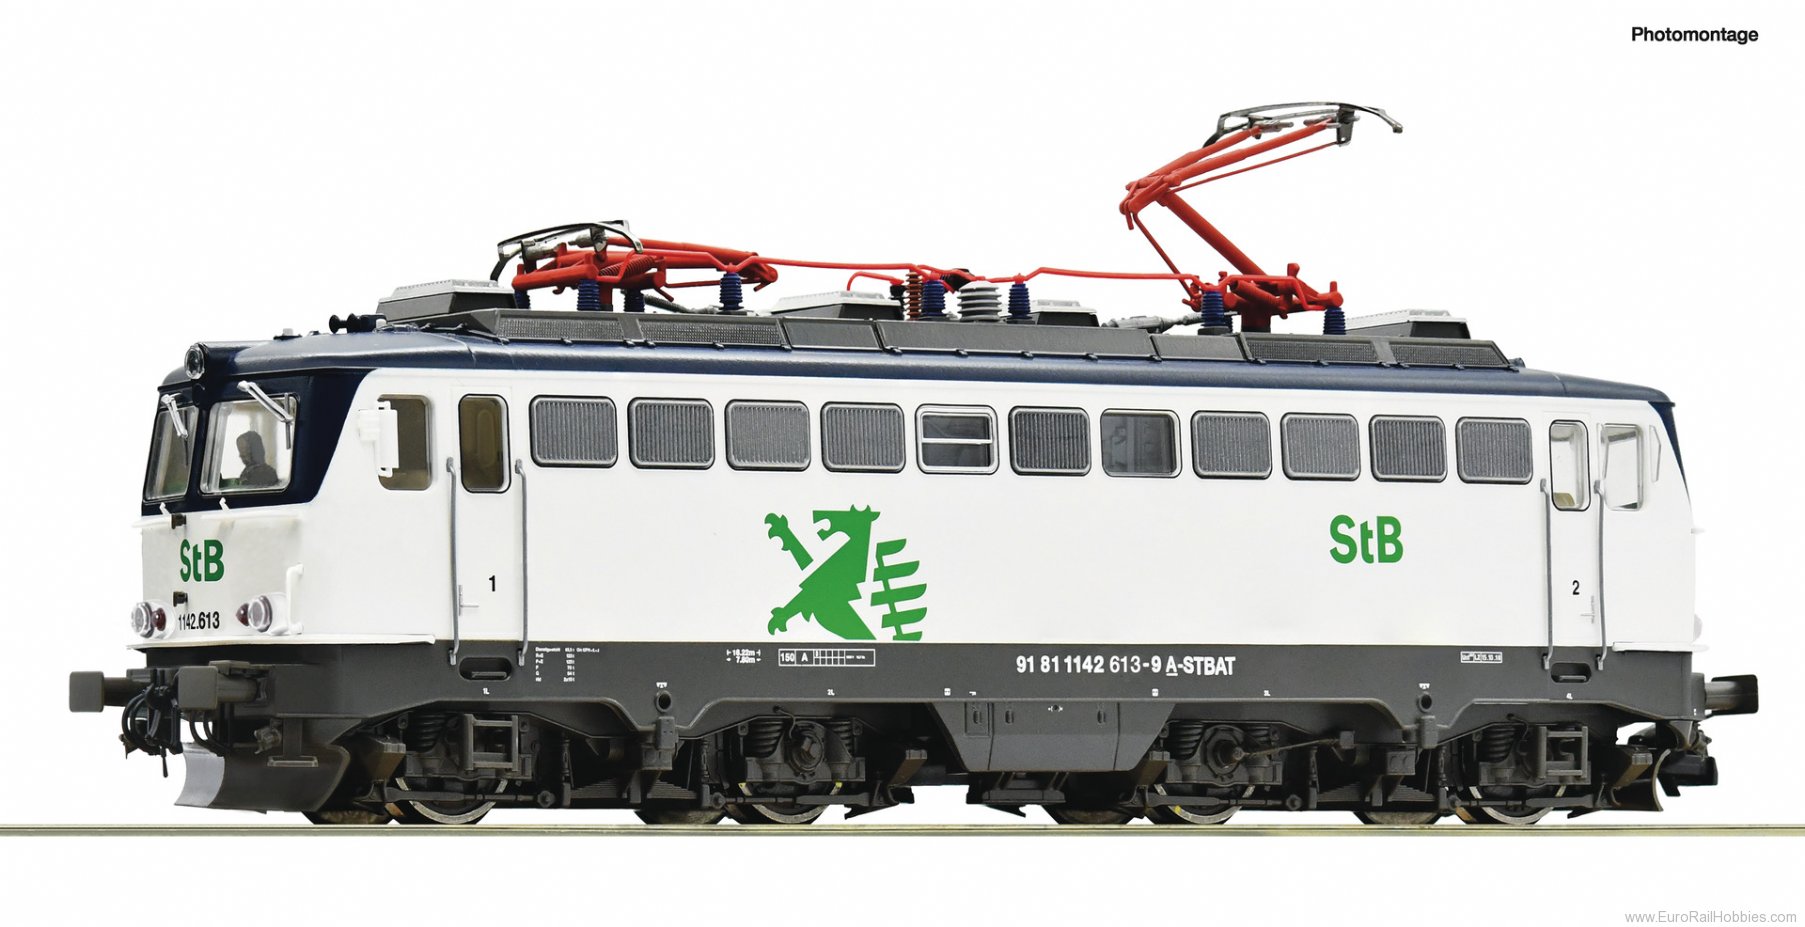 Roco 7520042 Electric locomotive 1142 613-9, StB (Marklin 